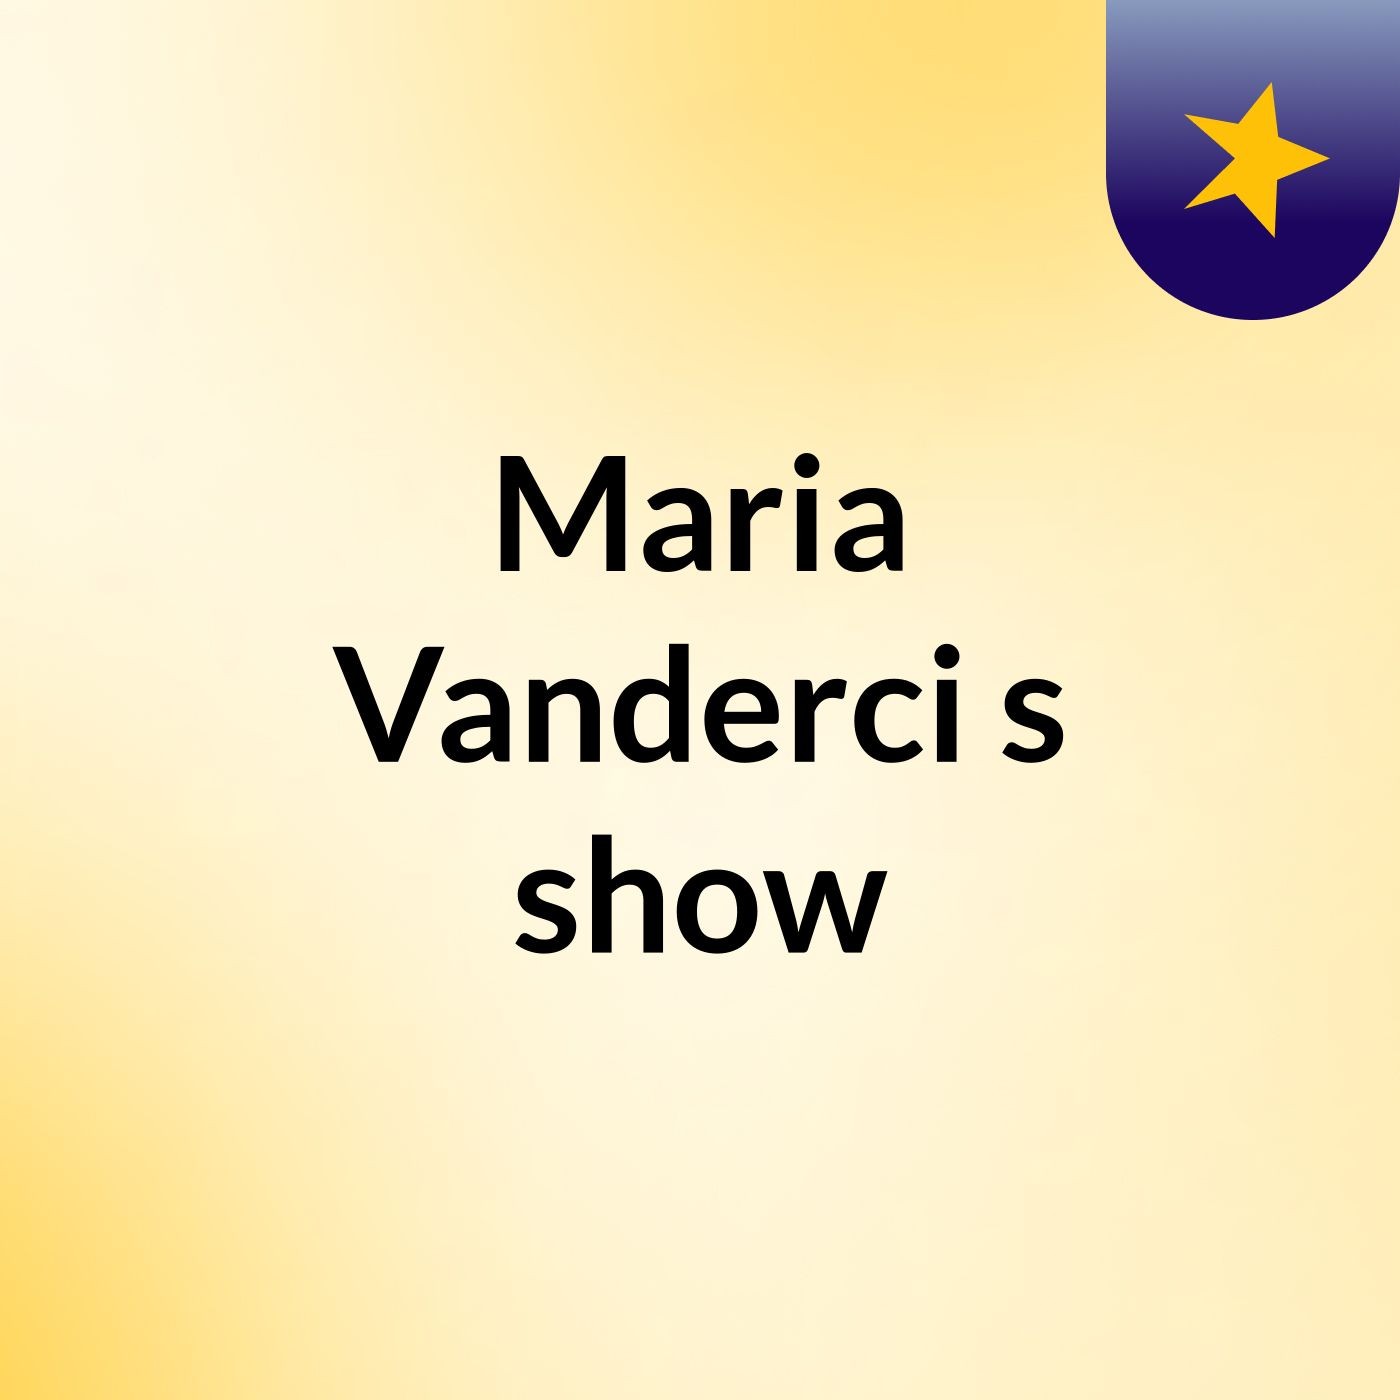 Maria Vanderci's show